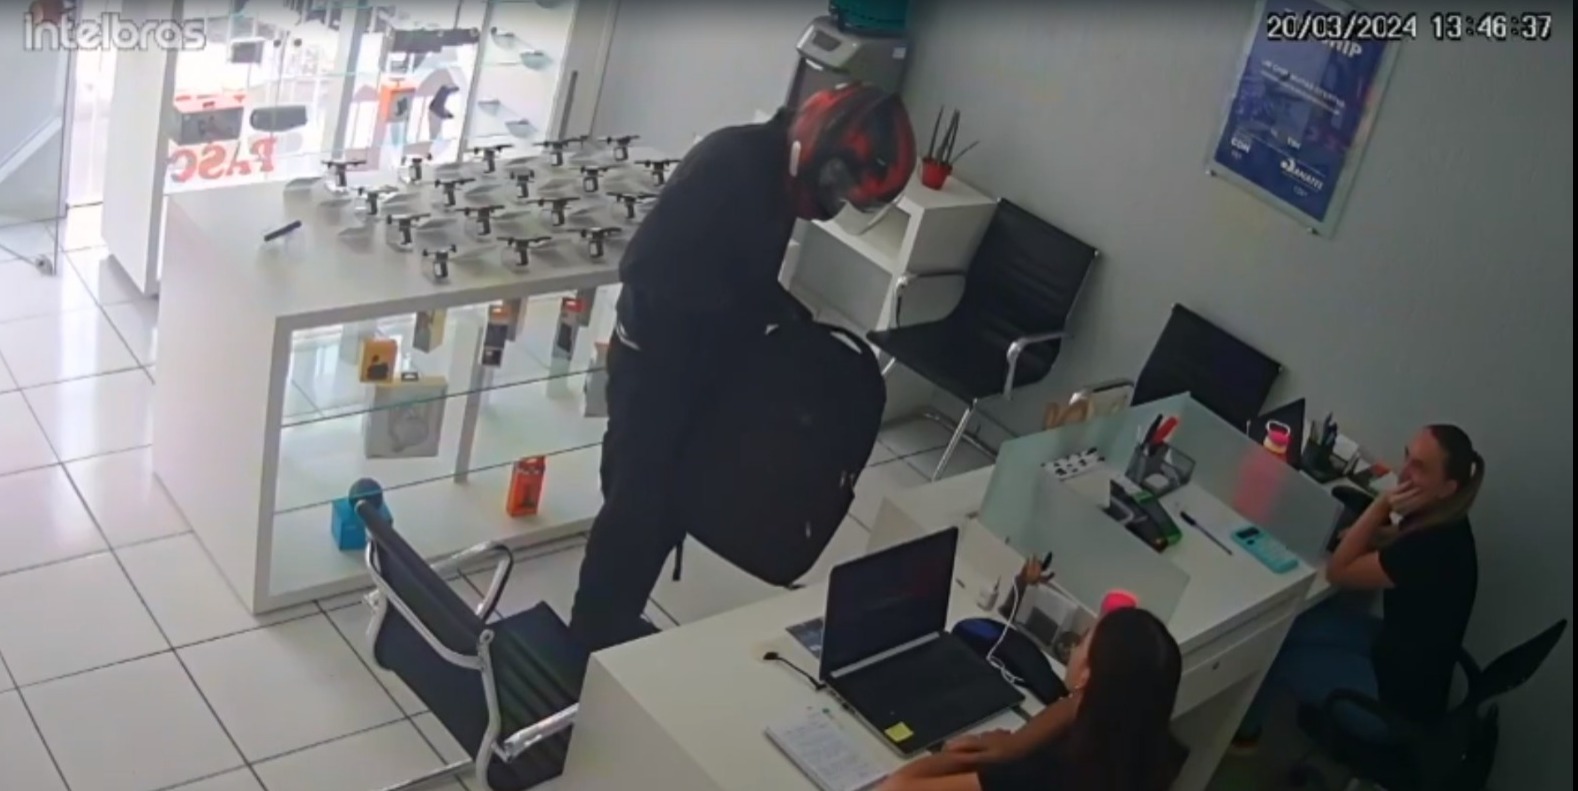 Criminoso que roubou loja de celulares em Salete segue foragido